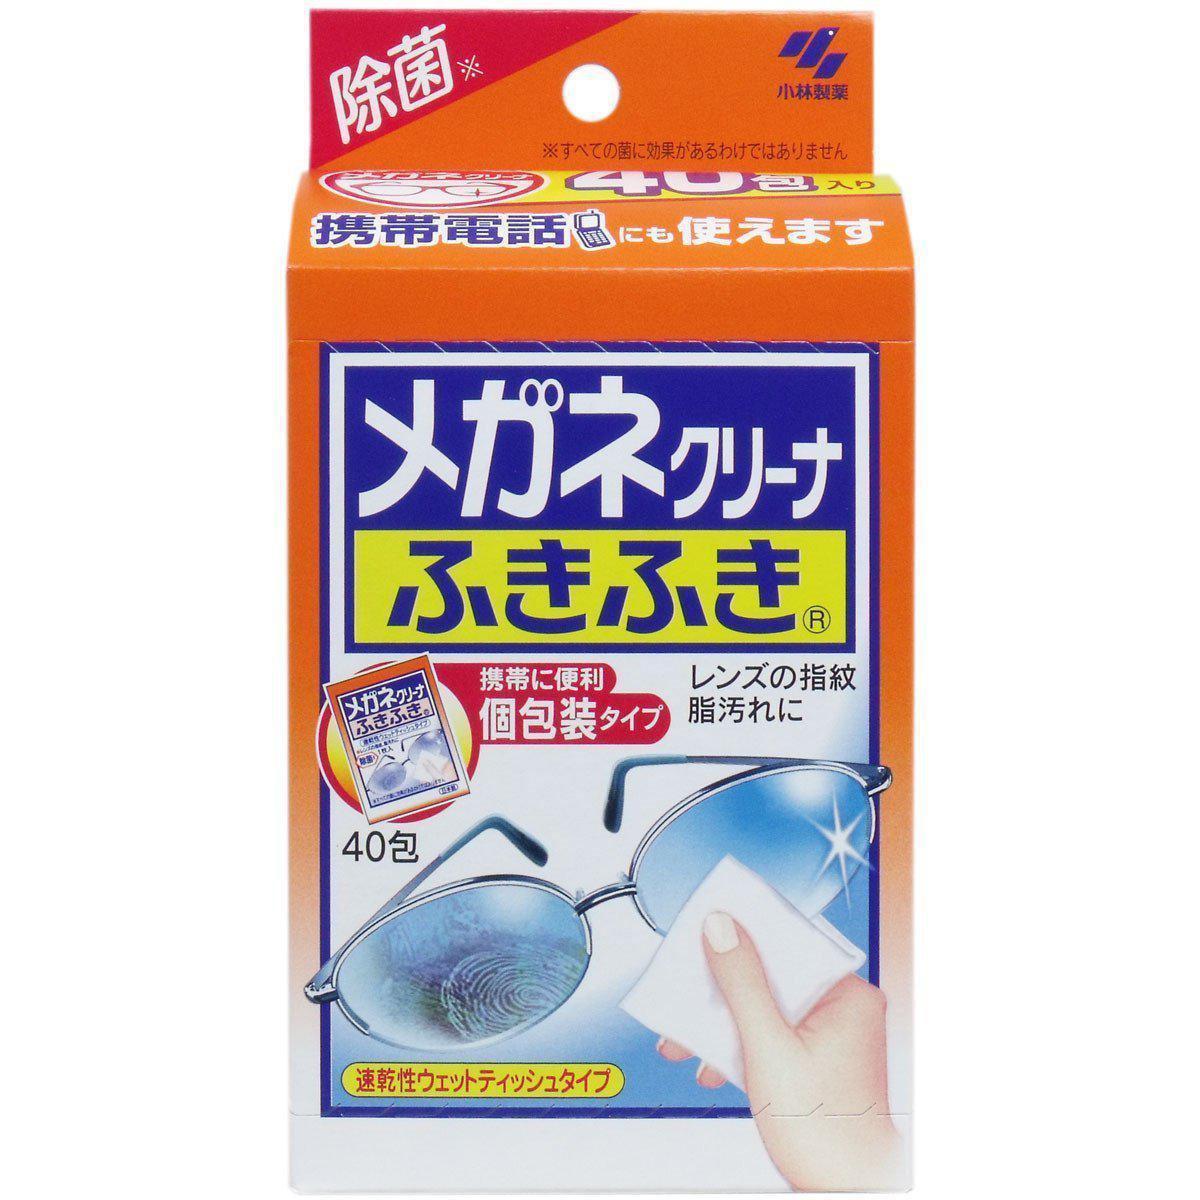 Kobayashi Fukifuki Eyeglass Cleaner Lens Cleaning Wipes 40 sheets